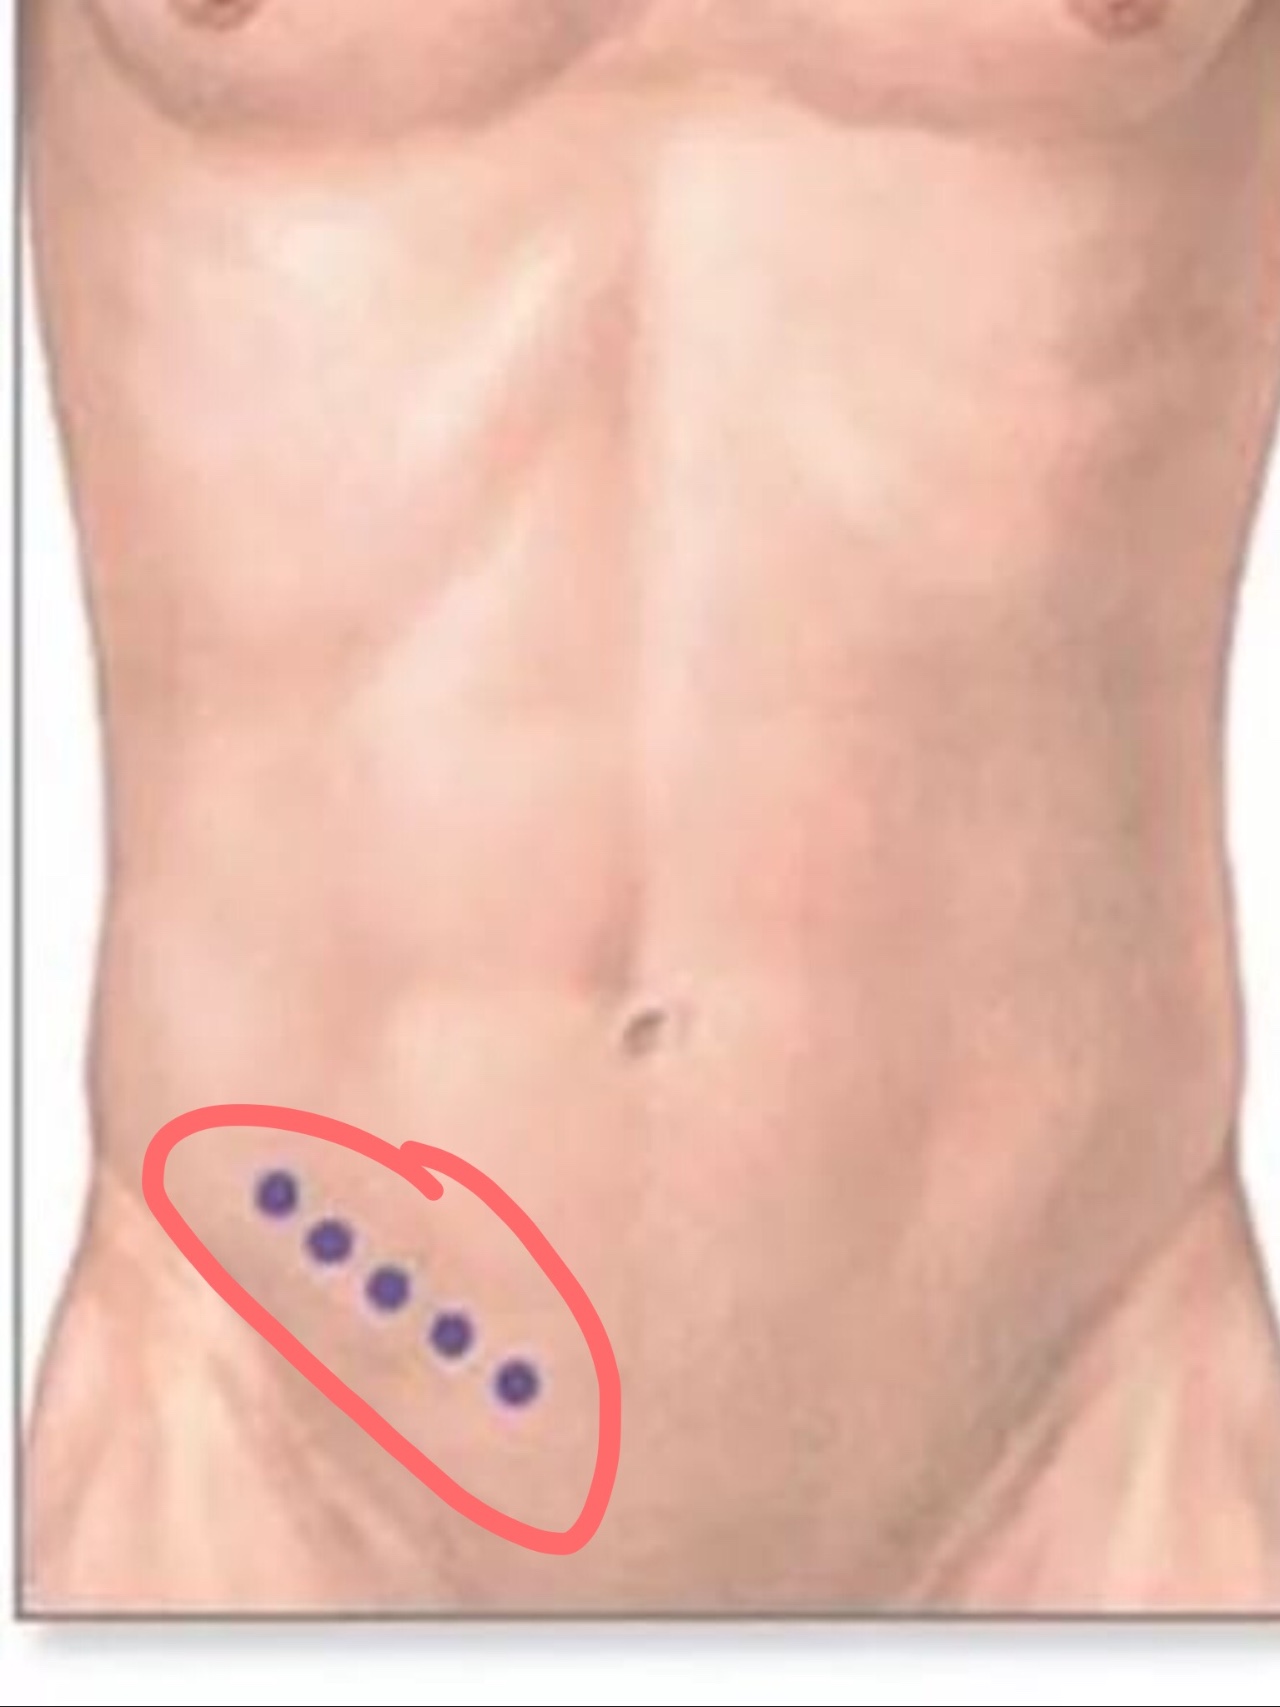 уплотнение под кожей на груди у мужчин фото 108